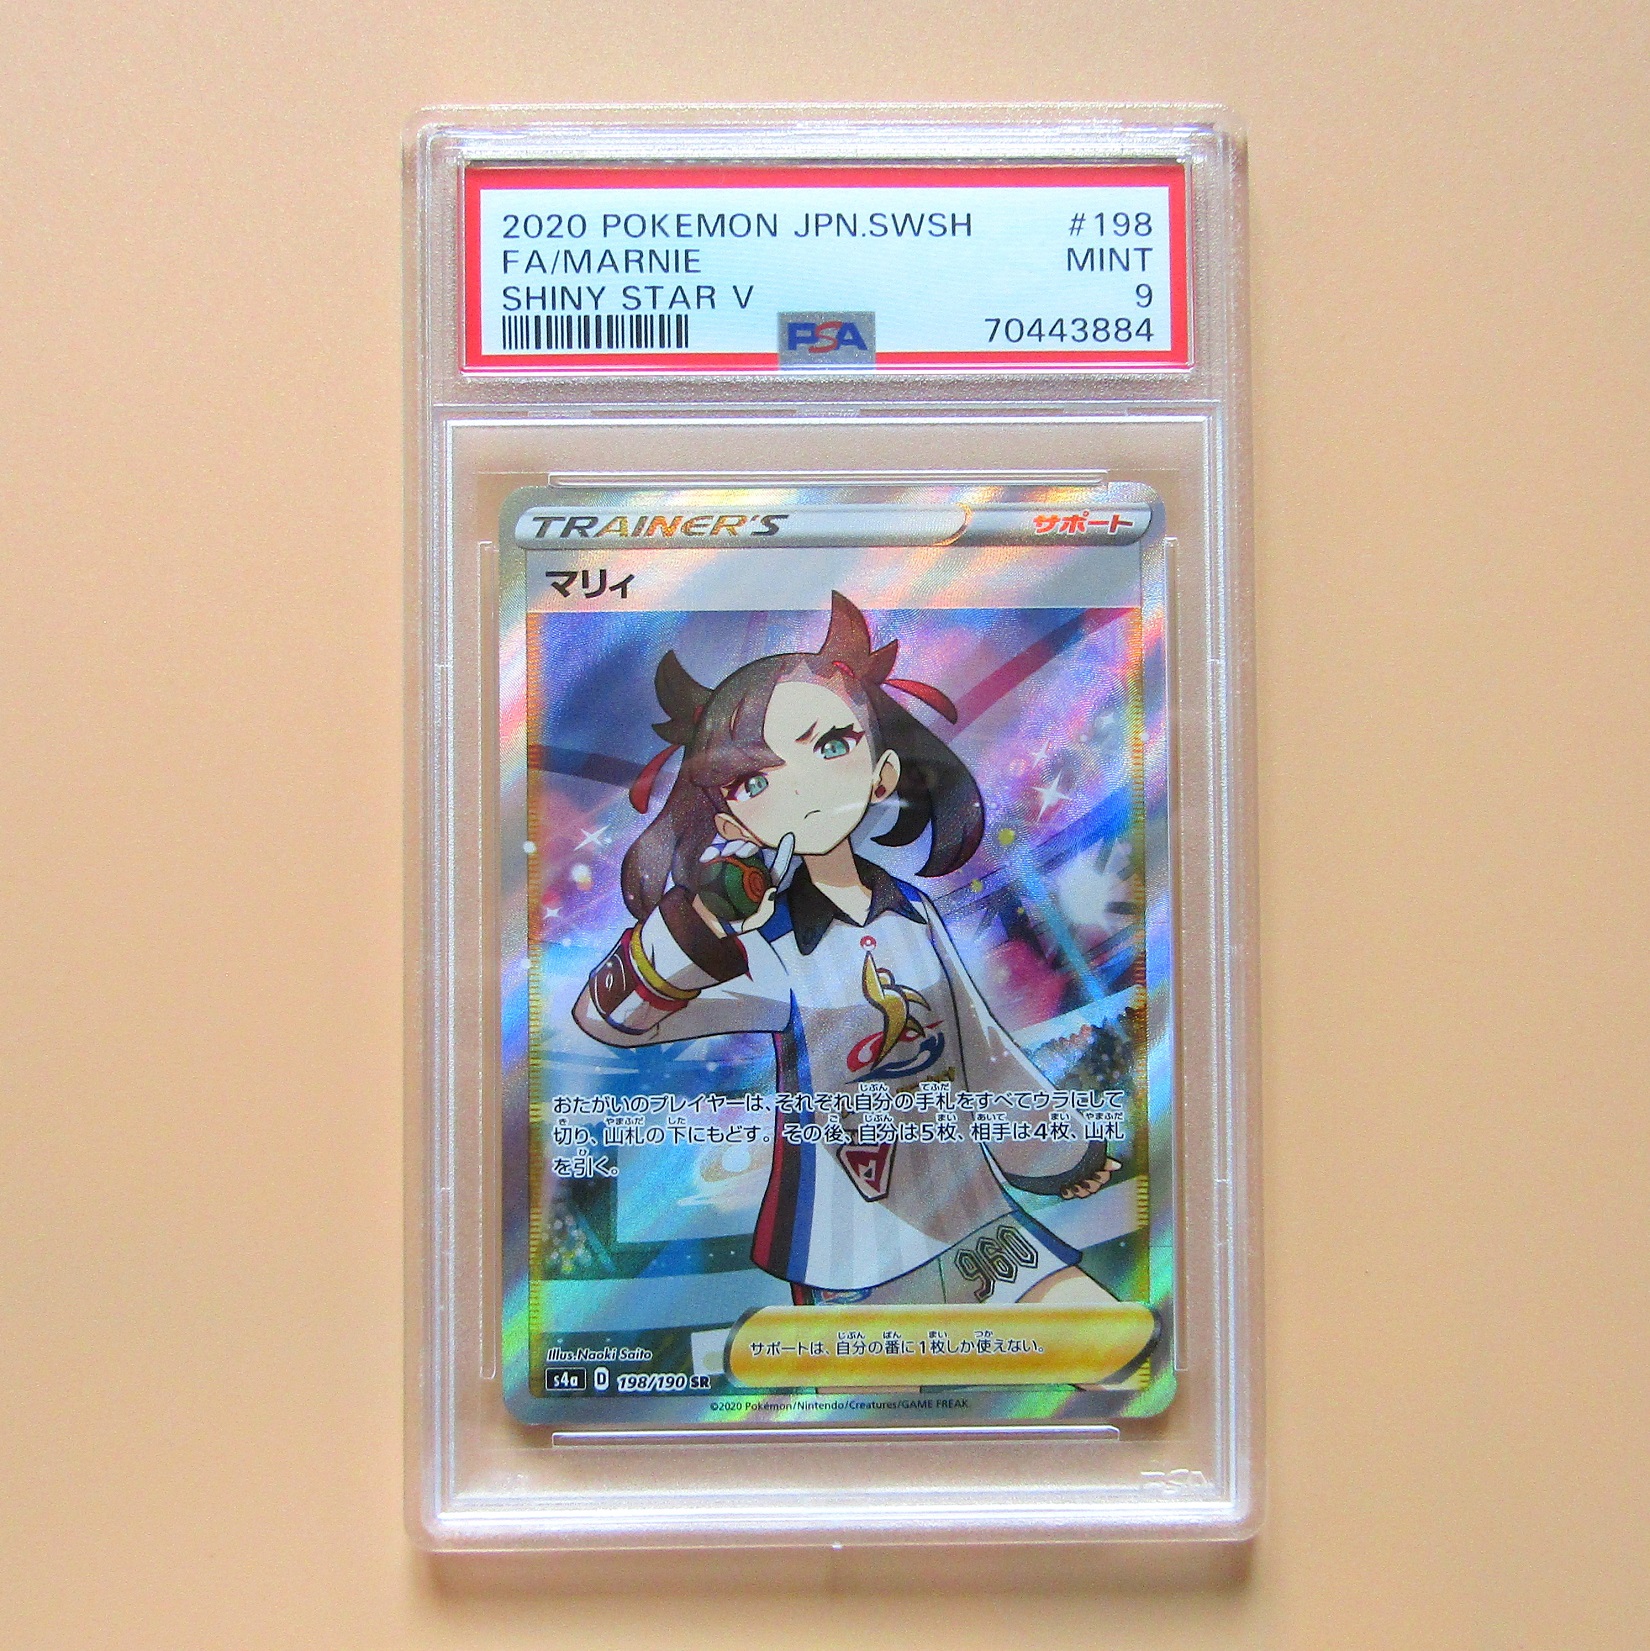 Pokémon card. Marnie s4a 198 Japanese Shiny Star V. PSA 9